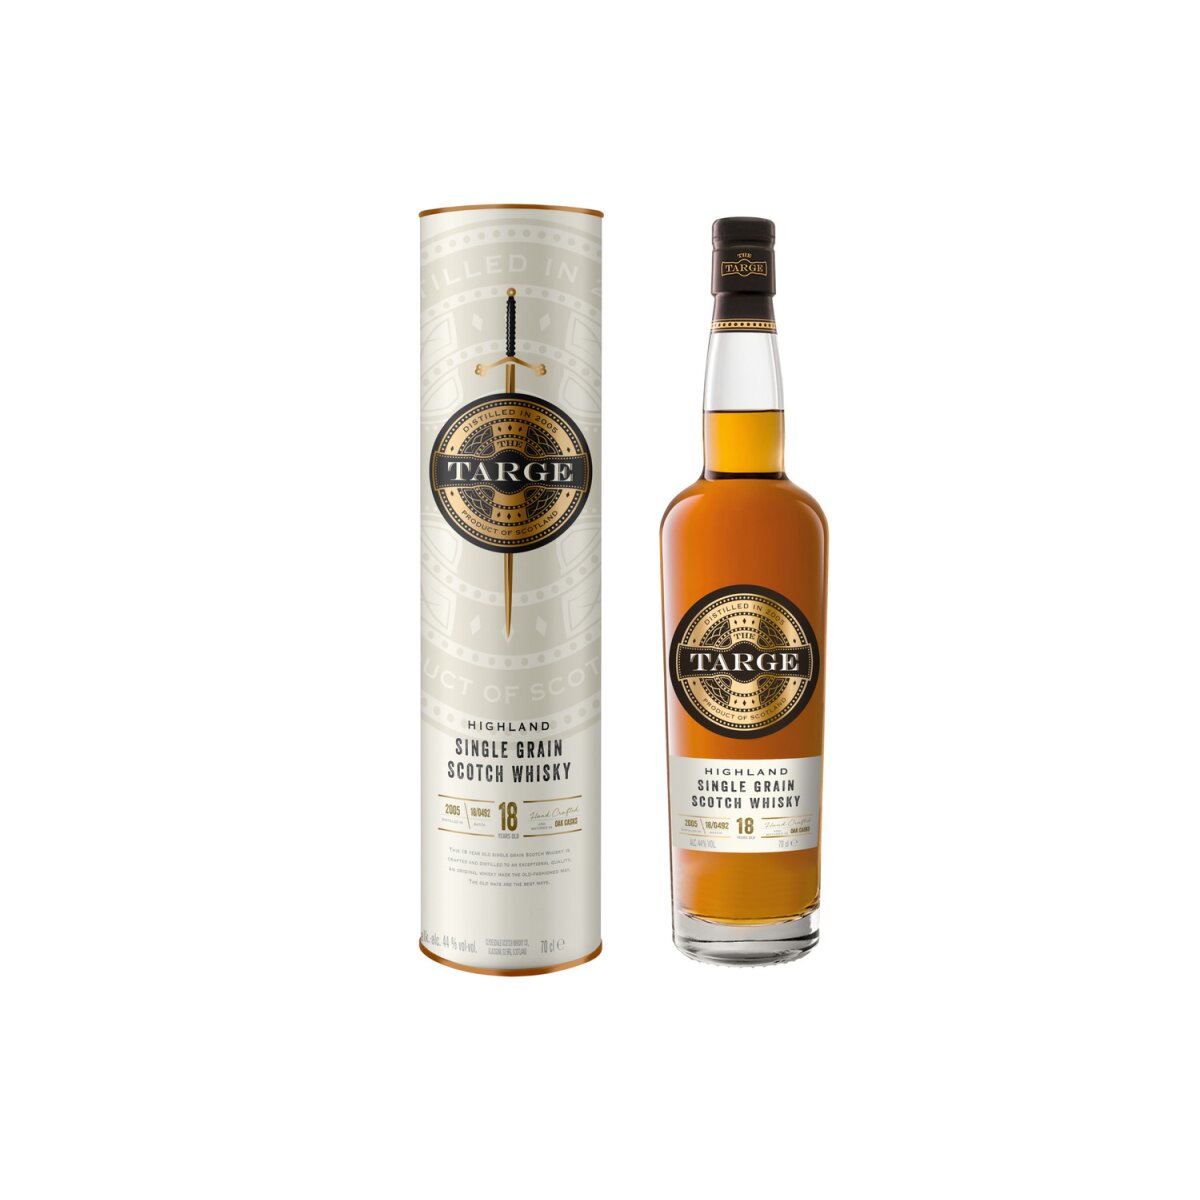 The Targe Vol, Geschenkbox 18 44% Single 36,99 € Whisky Scotch Highland Grain Jahre mit